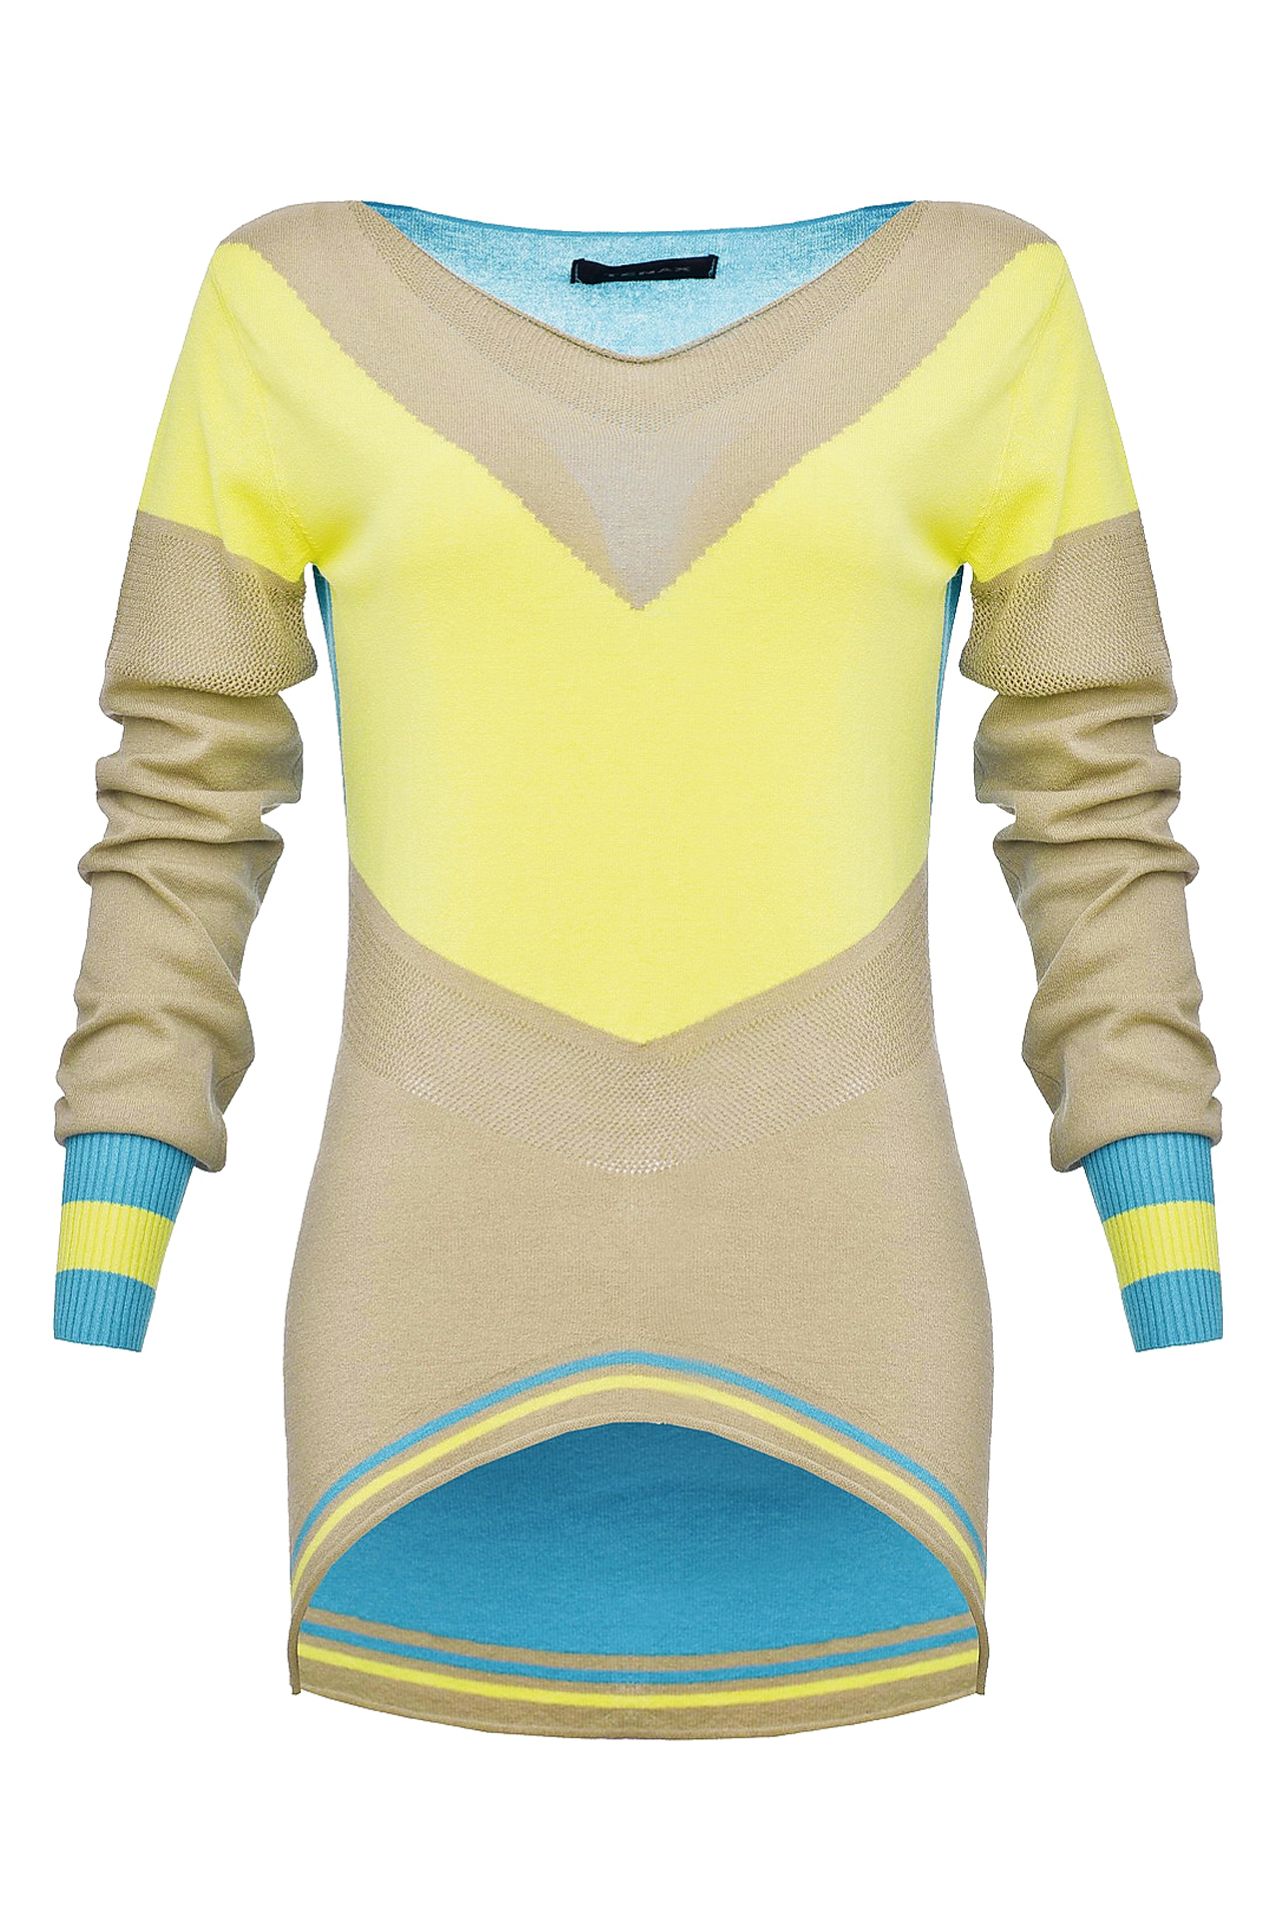 Одежда женская Джемпер TENAX (TE0419/14.2). Купить за 4900 руб.